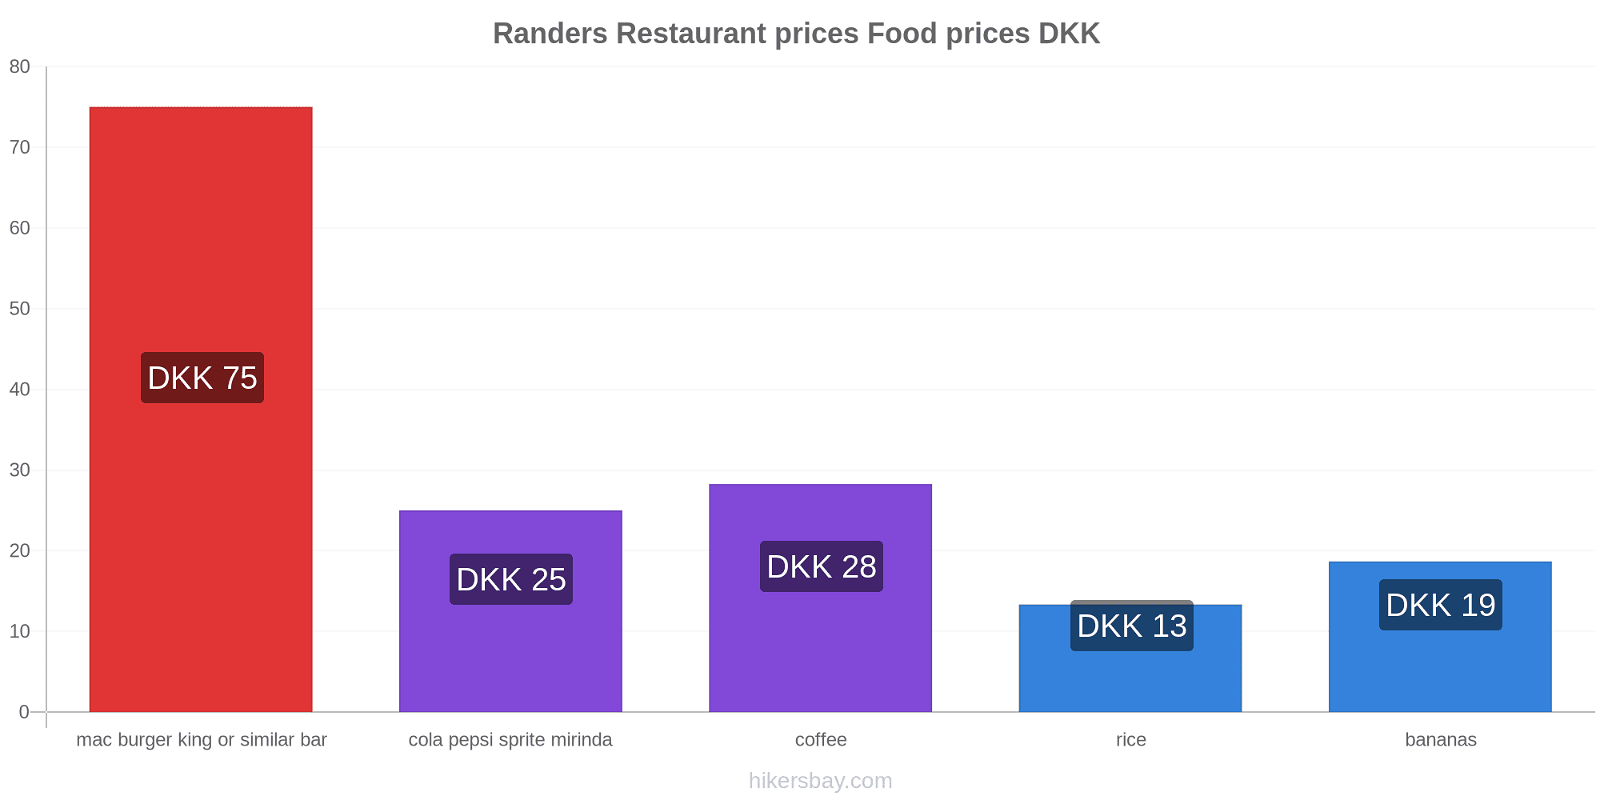 Randers price changes hikersbay.com